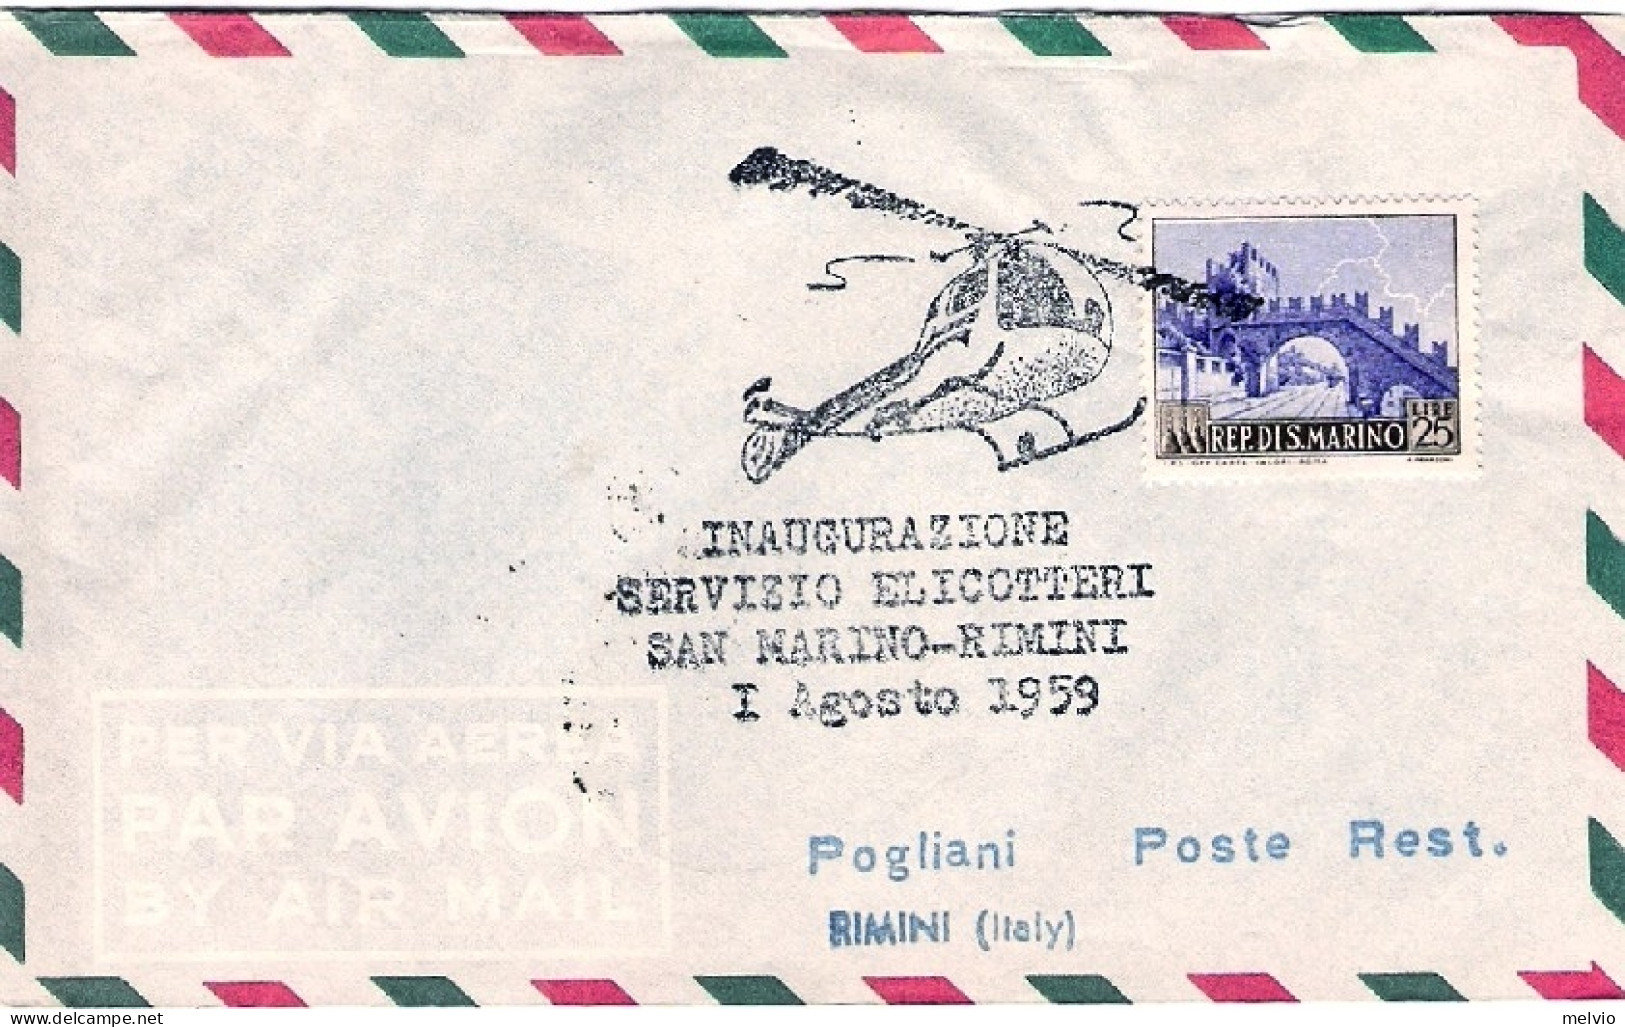 San Marino-1959 Bollo Inaugurazione Servizio Elicotteri San Marino-Rimini 1 Agos - Luchtpost